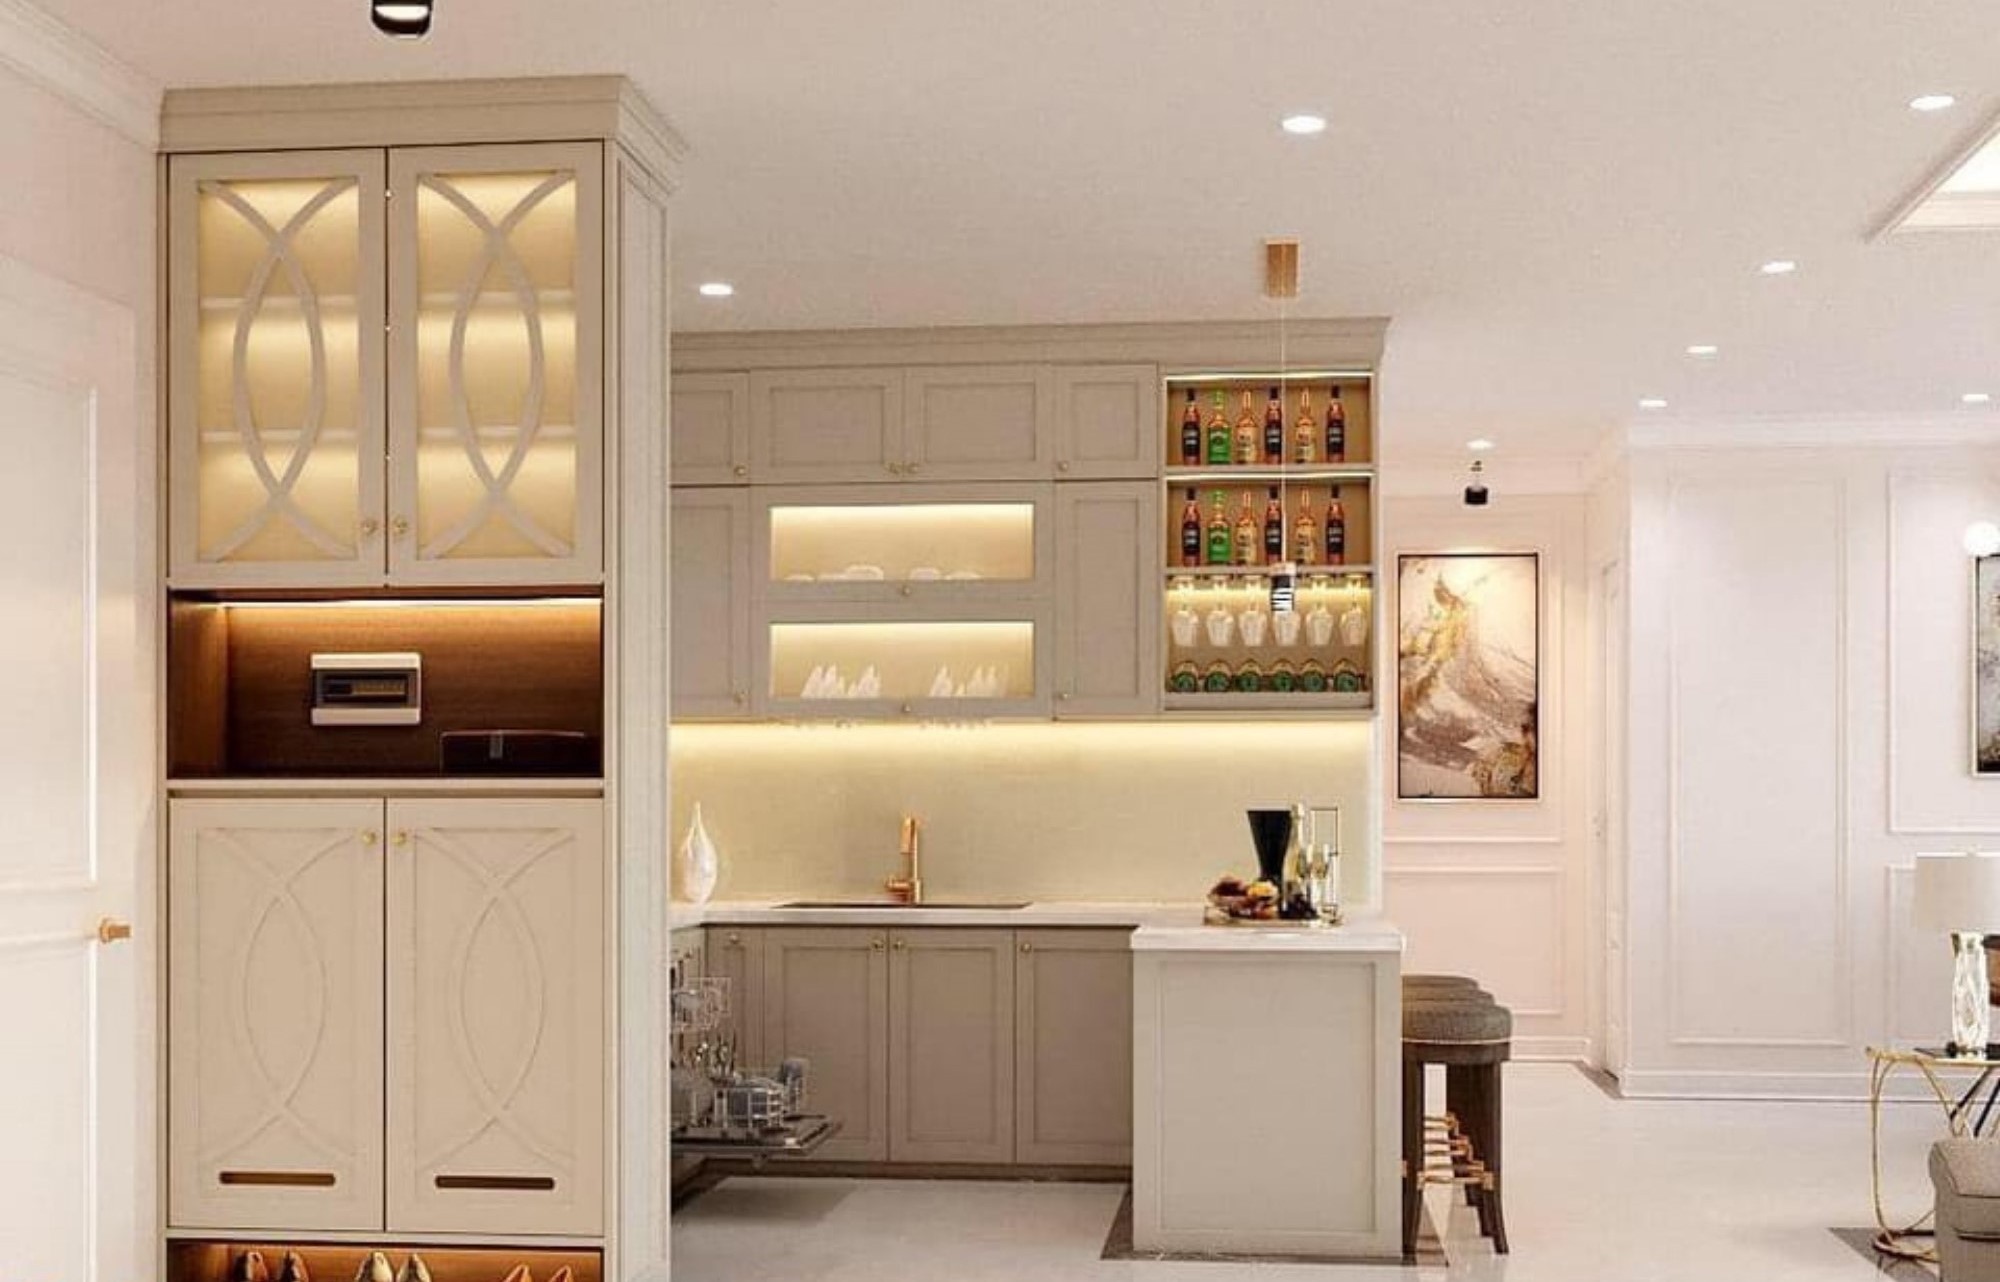 Lối vào, phòng bếp, phong cách tân cổ điển Neo Classic, thiết kế concept nội thất, căn hộ Viva Riverside